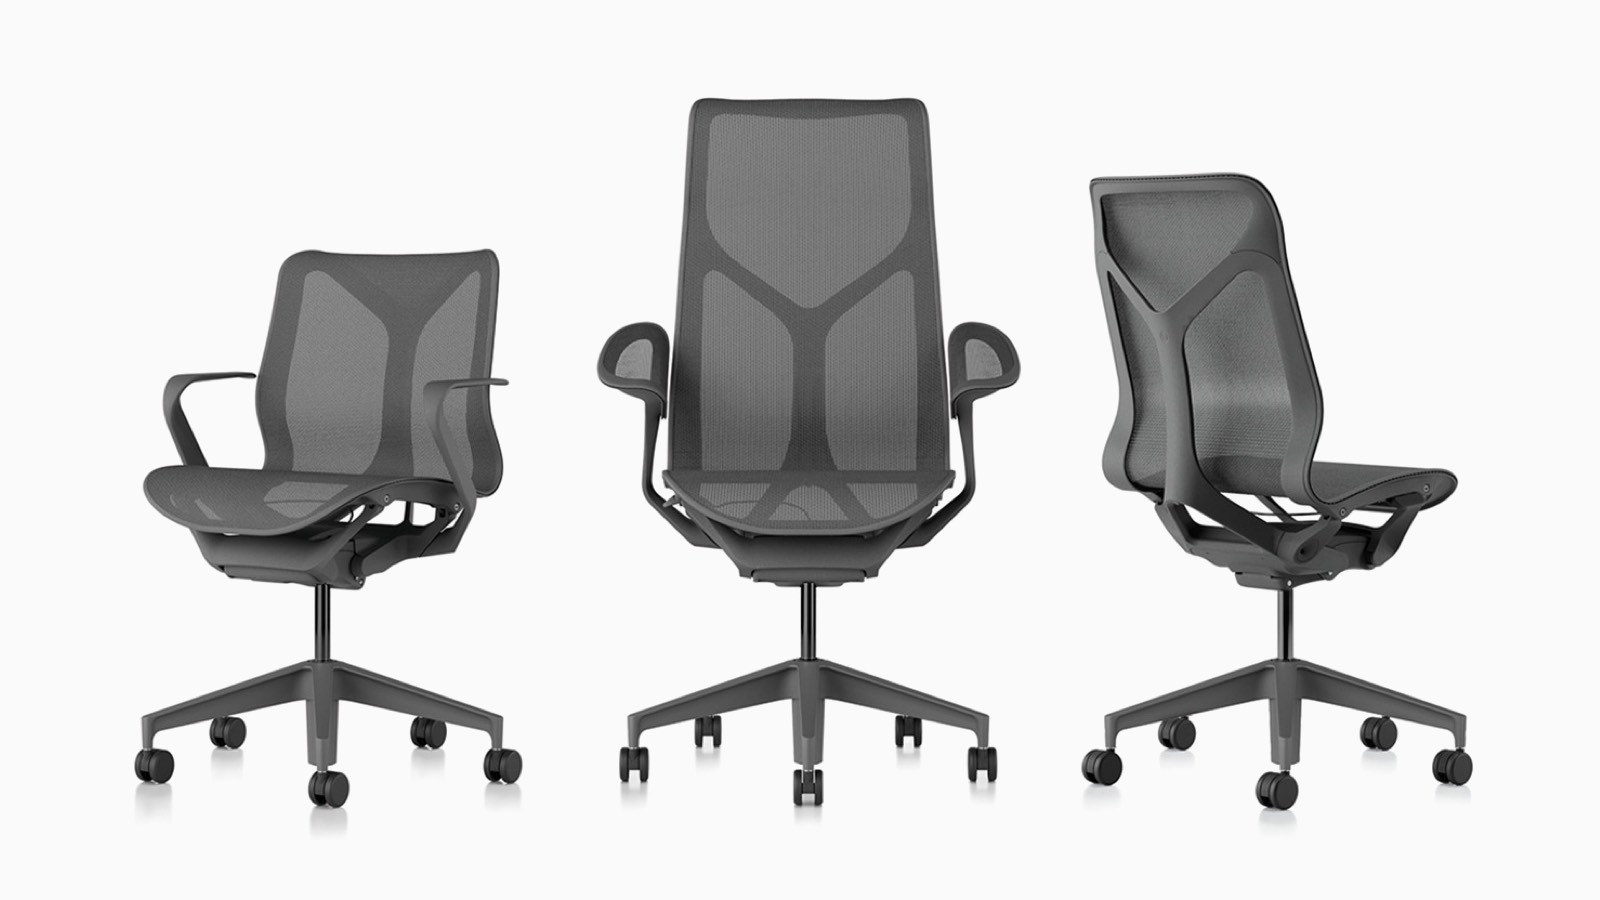 Cosm ergonomische Bürostühle mit niedriger Rückenlehne, hoher Rückenlehne und mittlerer Rückenlehne mit Federmaterialien, Untergestellen und Rahmen in Carbon Grey.